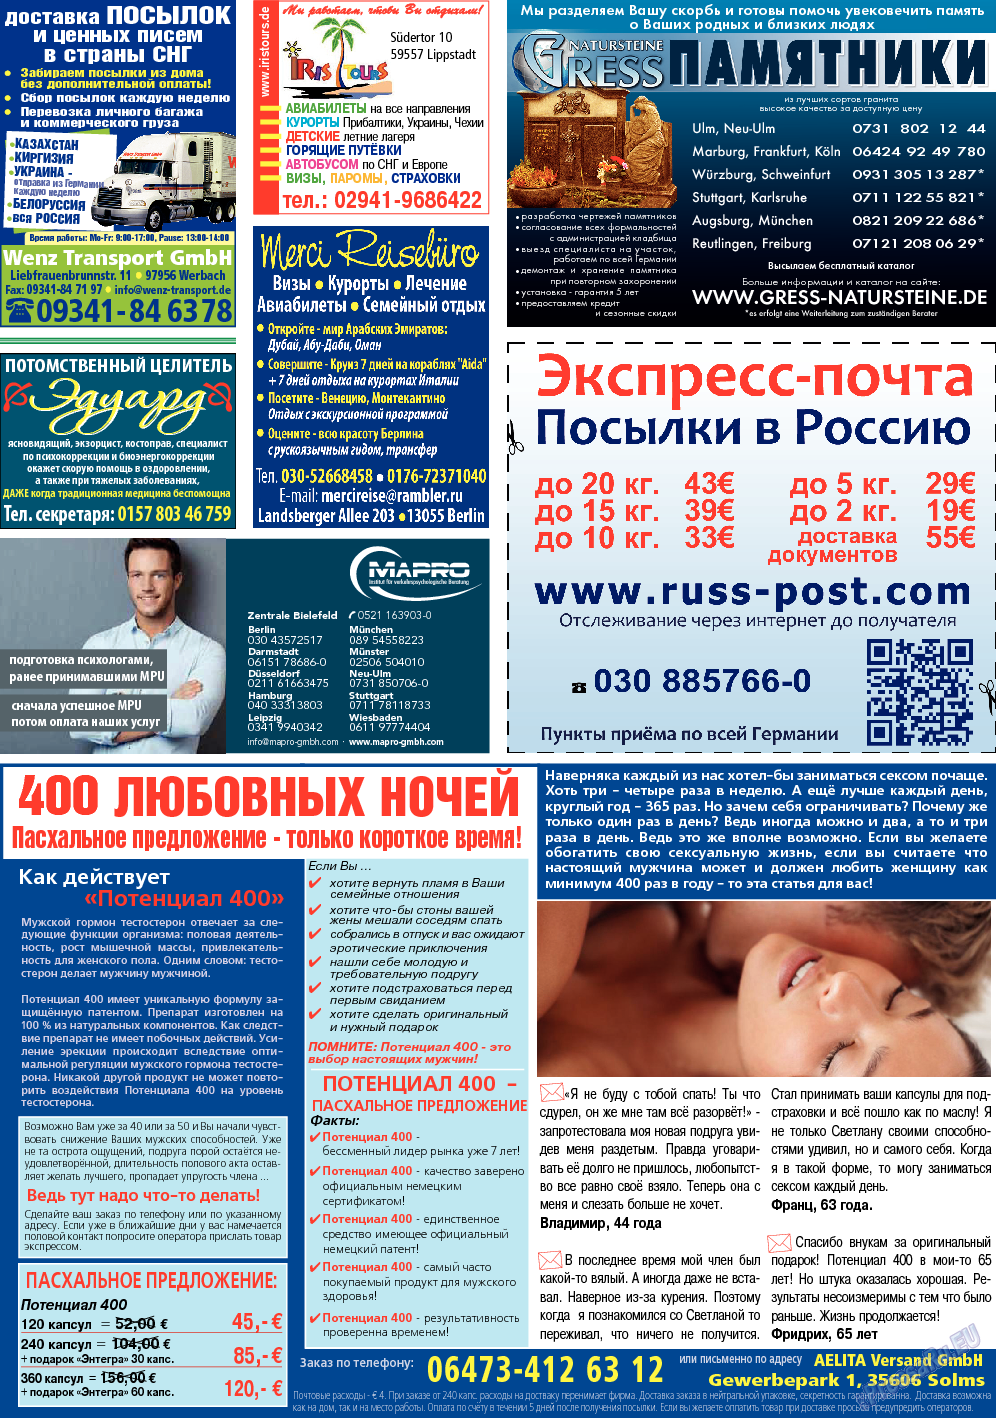 Кругозор (газета). 2014 год, номер 3, стр. 32